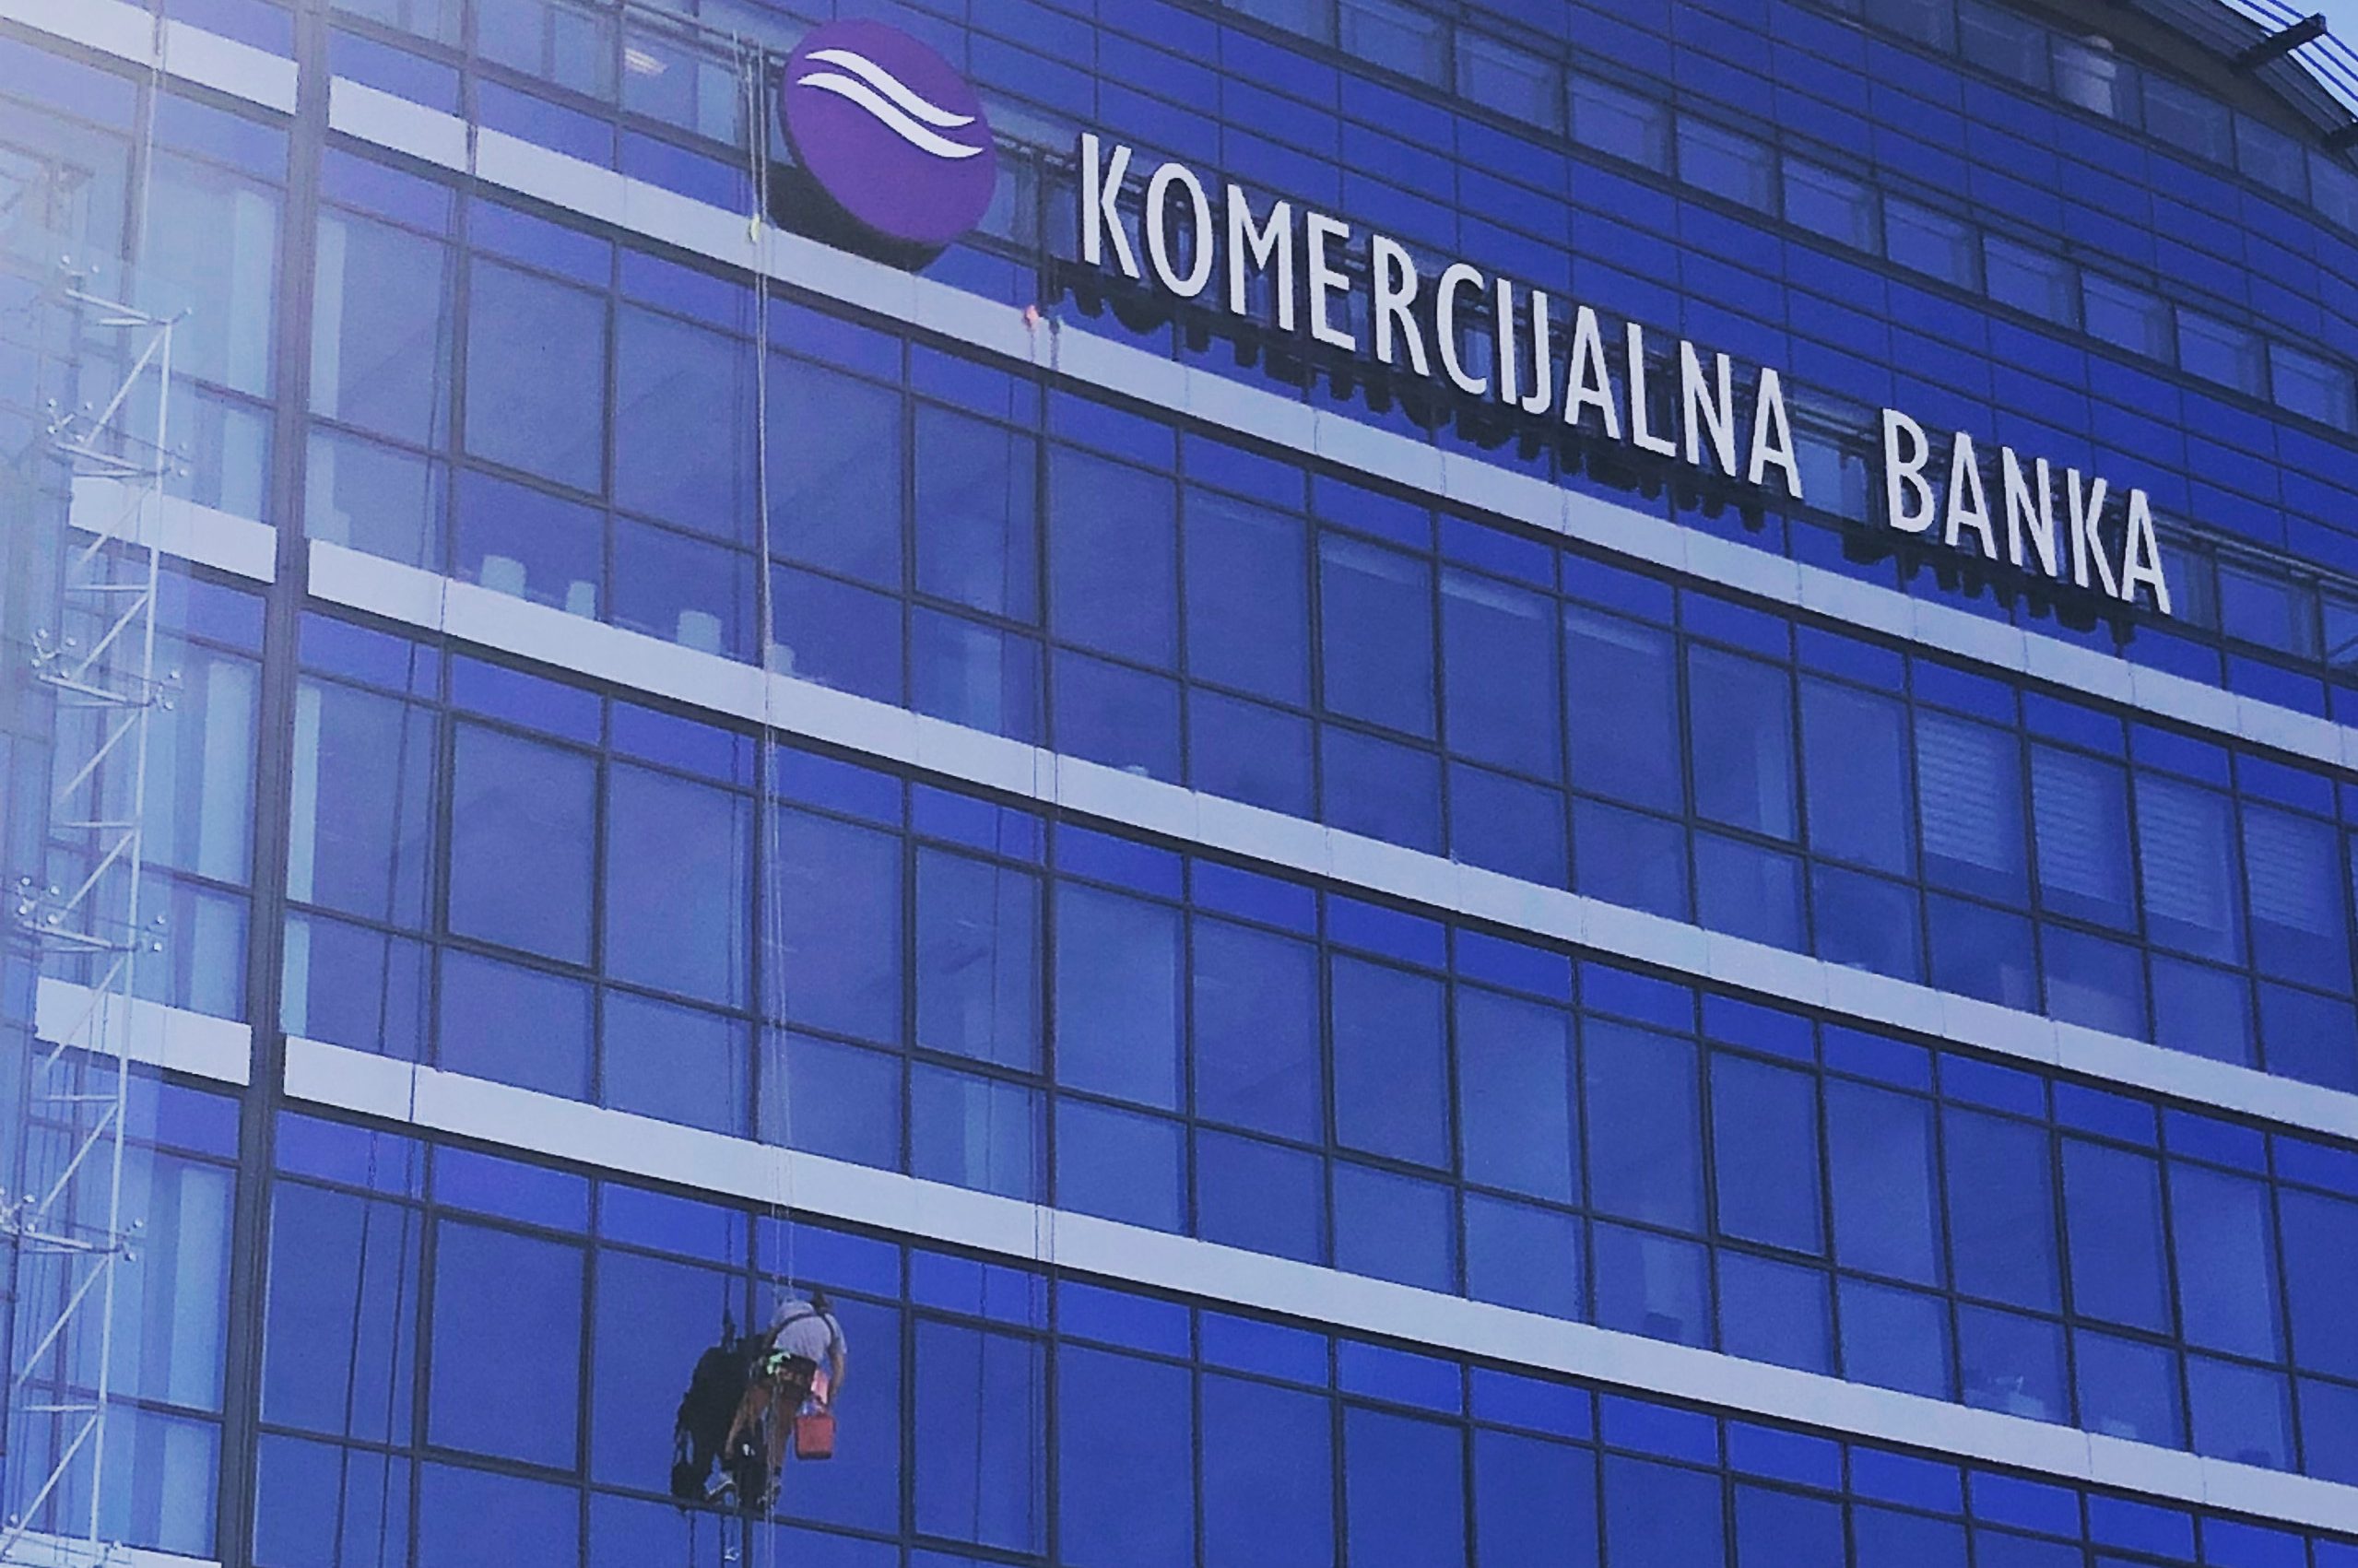 Istorijski rezultat Komercijalne banke u 2018: Profit 71 milion eura, depoziti porasli 11%